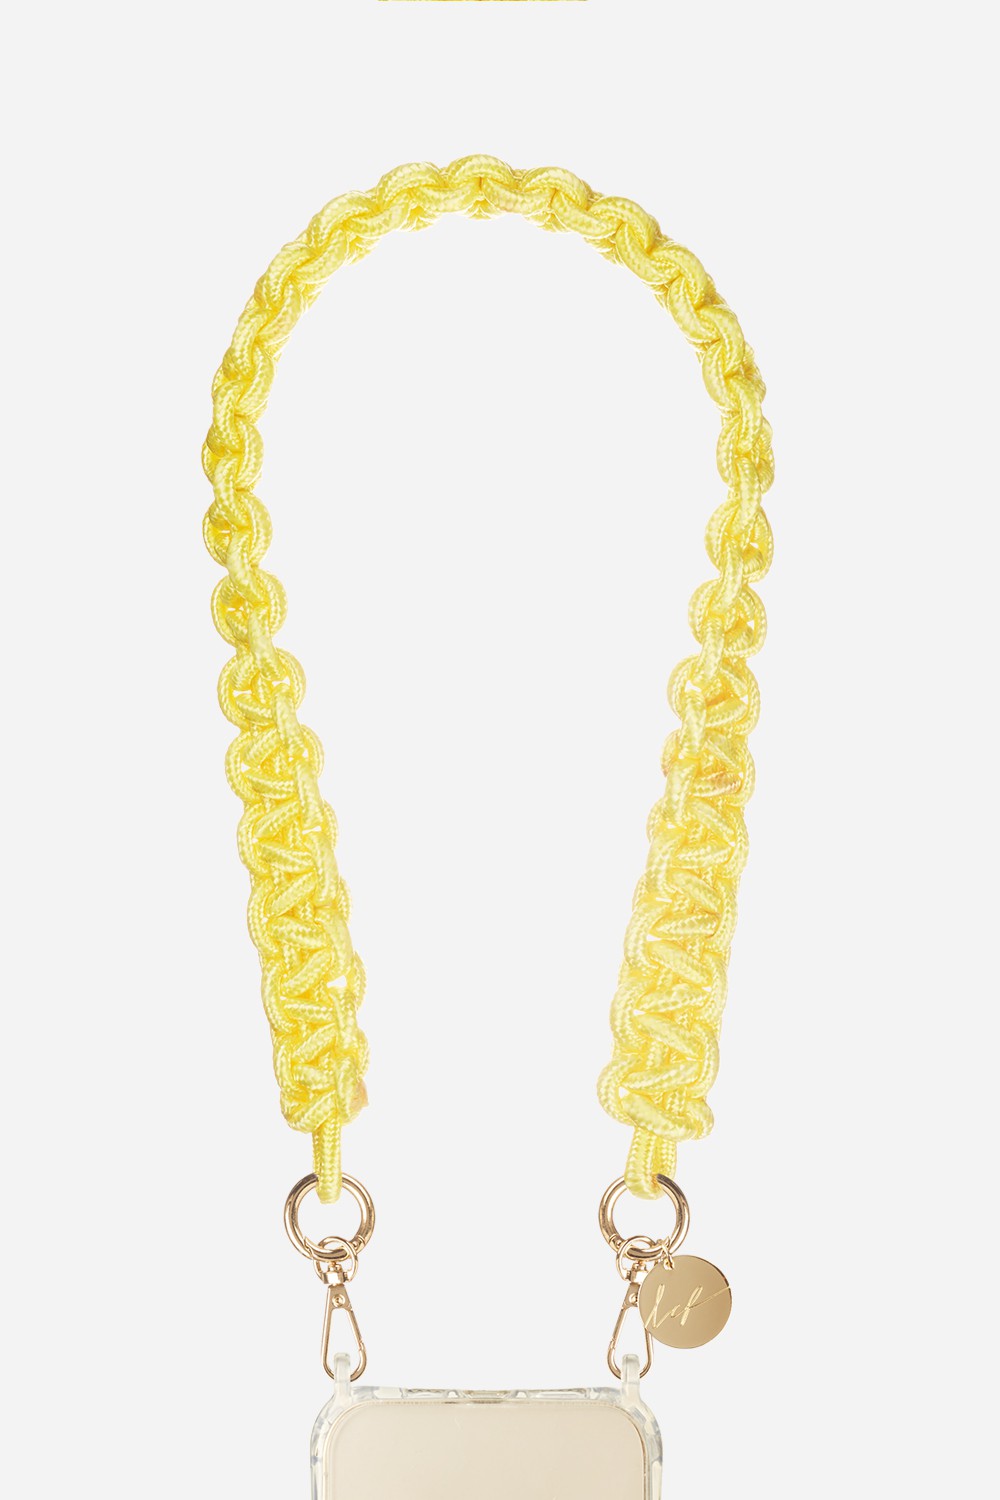 Short Robby Chain Yellow 60 cm